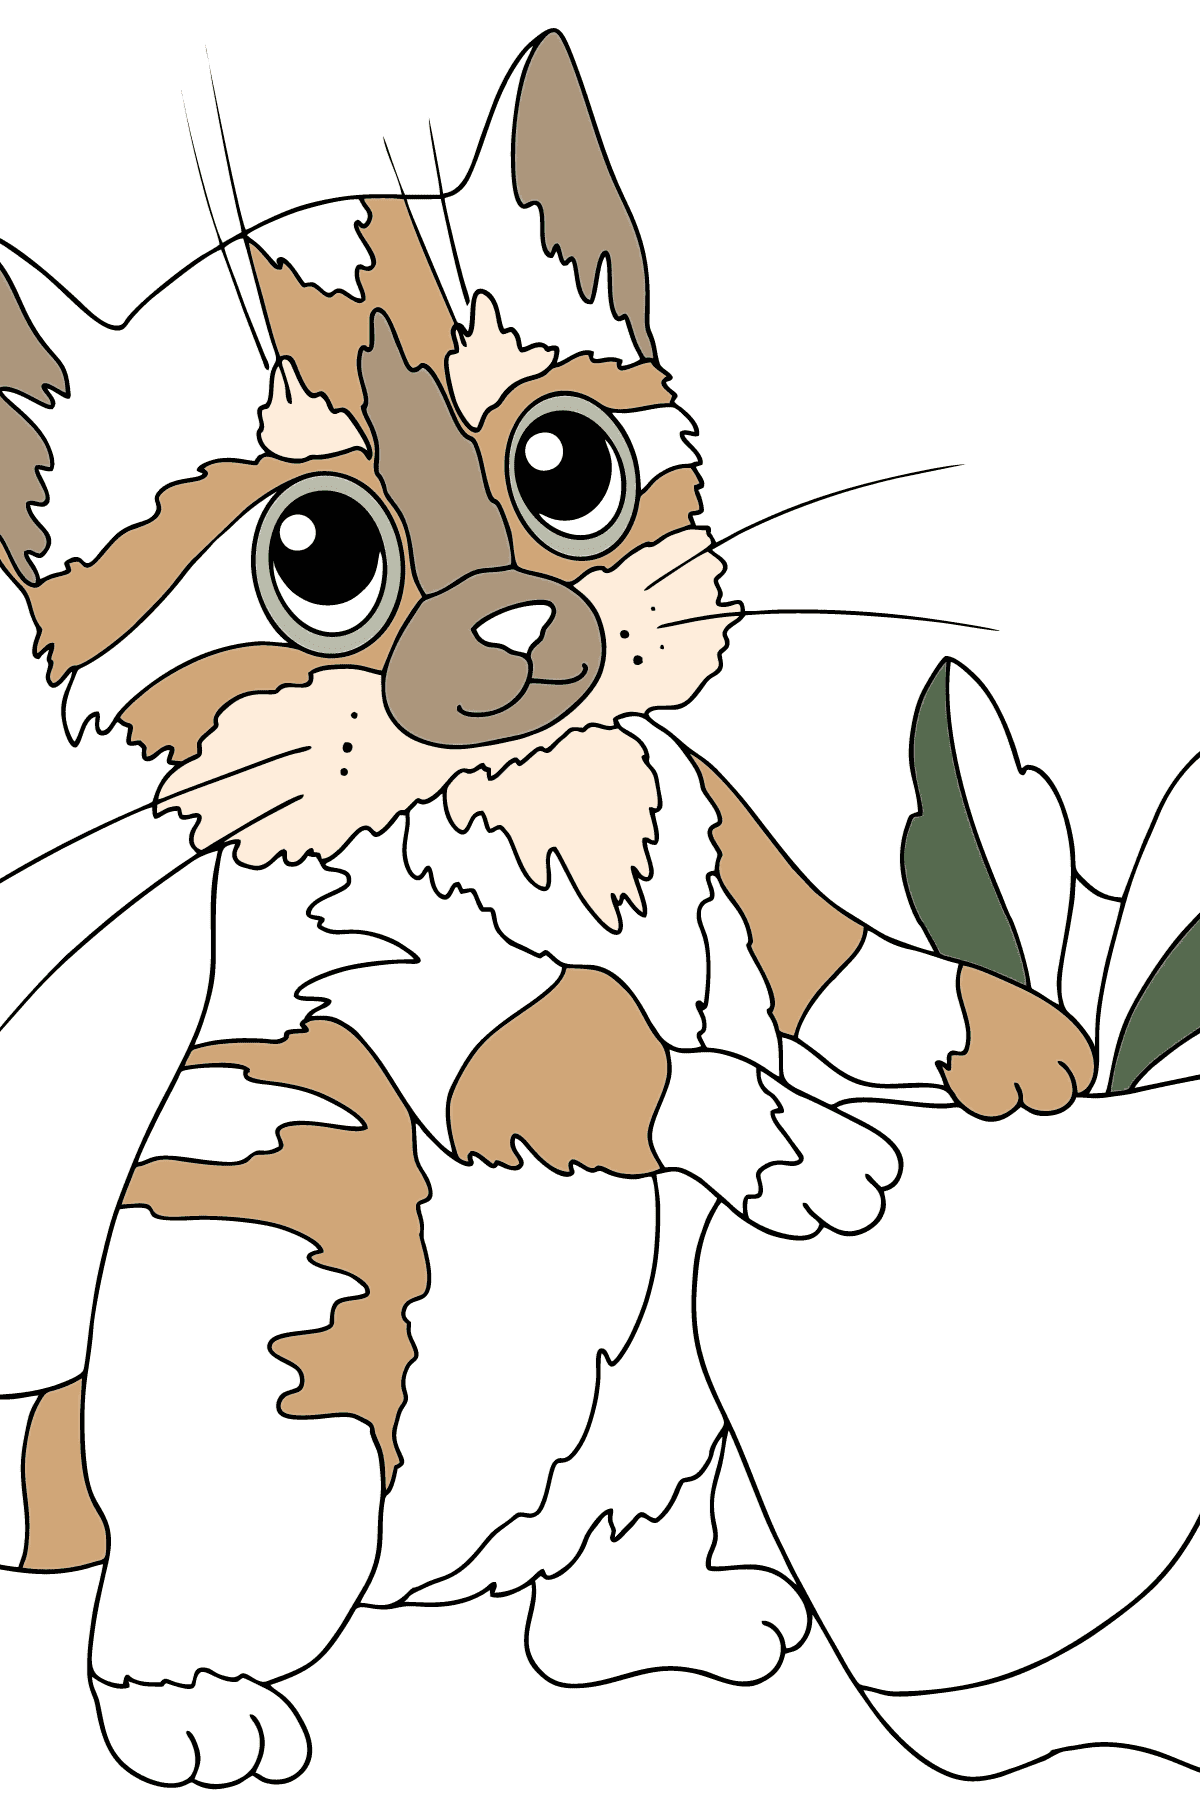 Página para colorear de gato mascota - Dibujos para Colorear para Niños